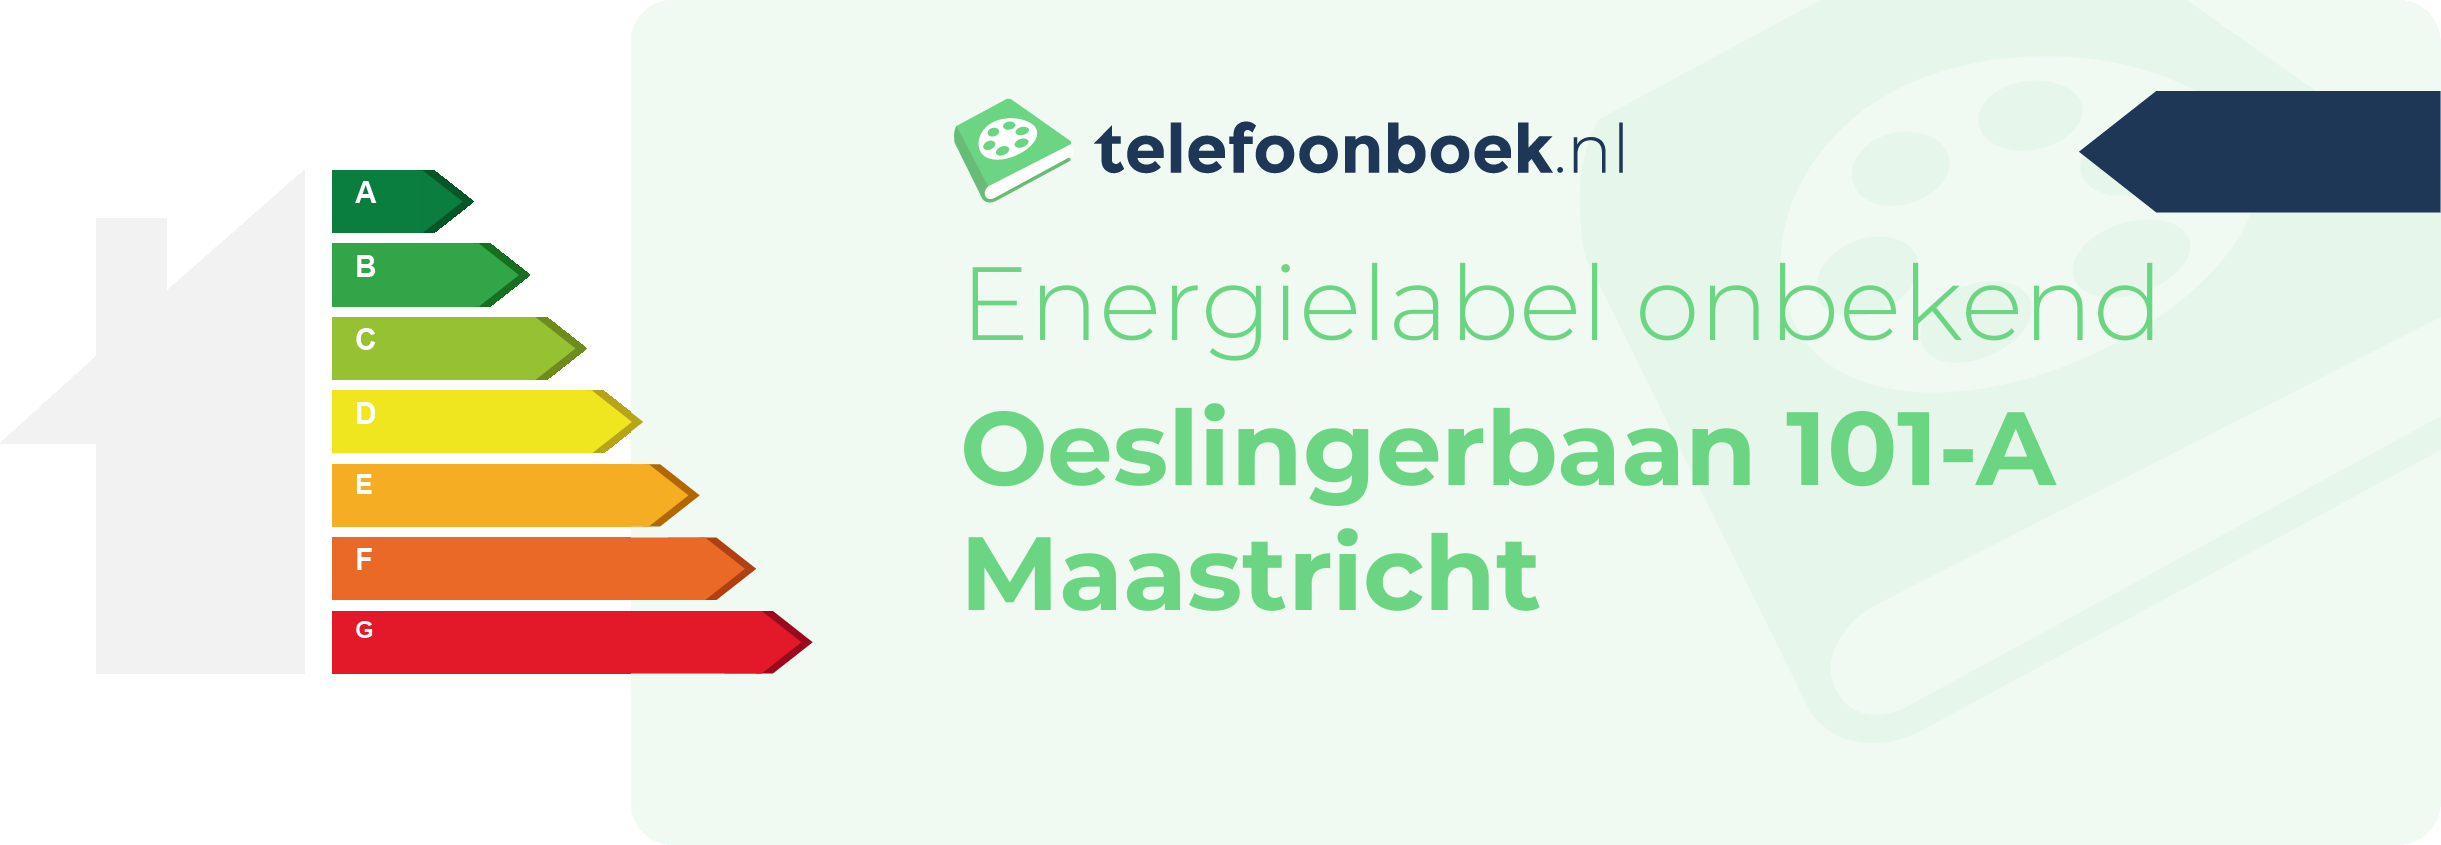 Energielabel Oeslingerbaan 101-A Maastricht